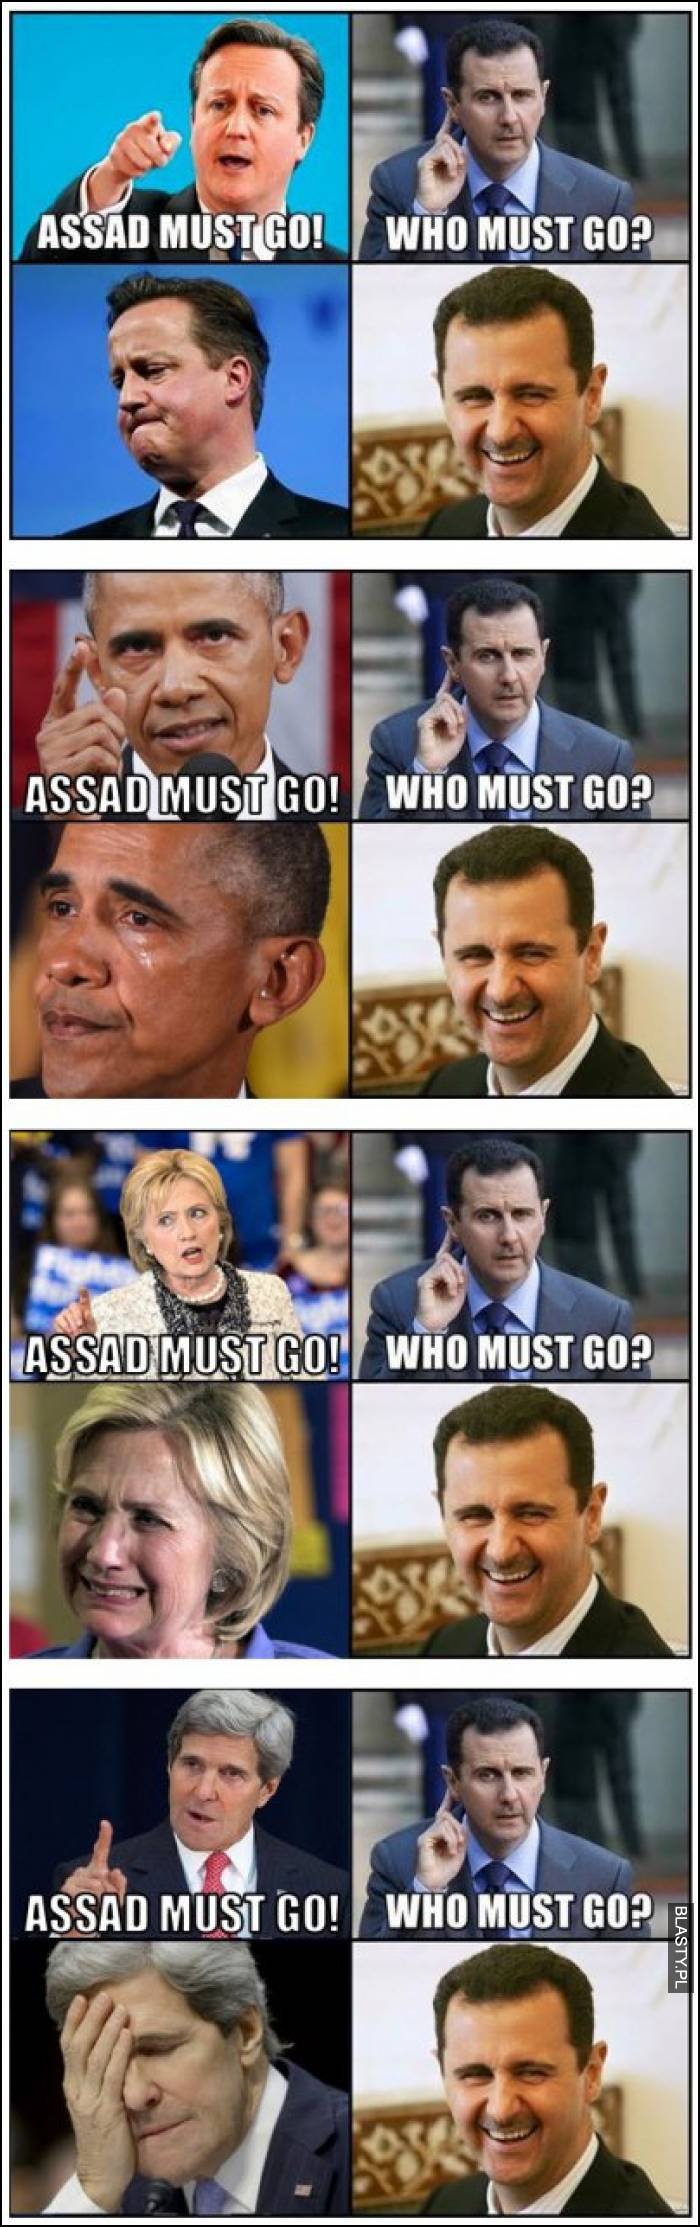 Assad must go